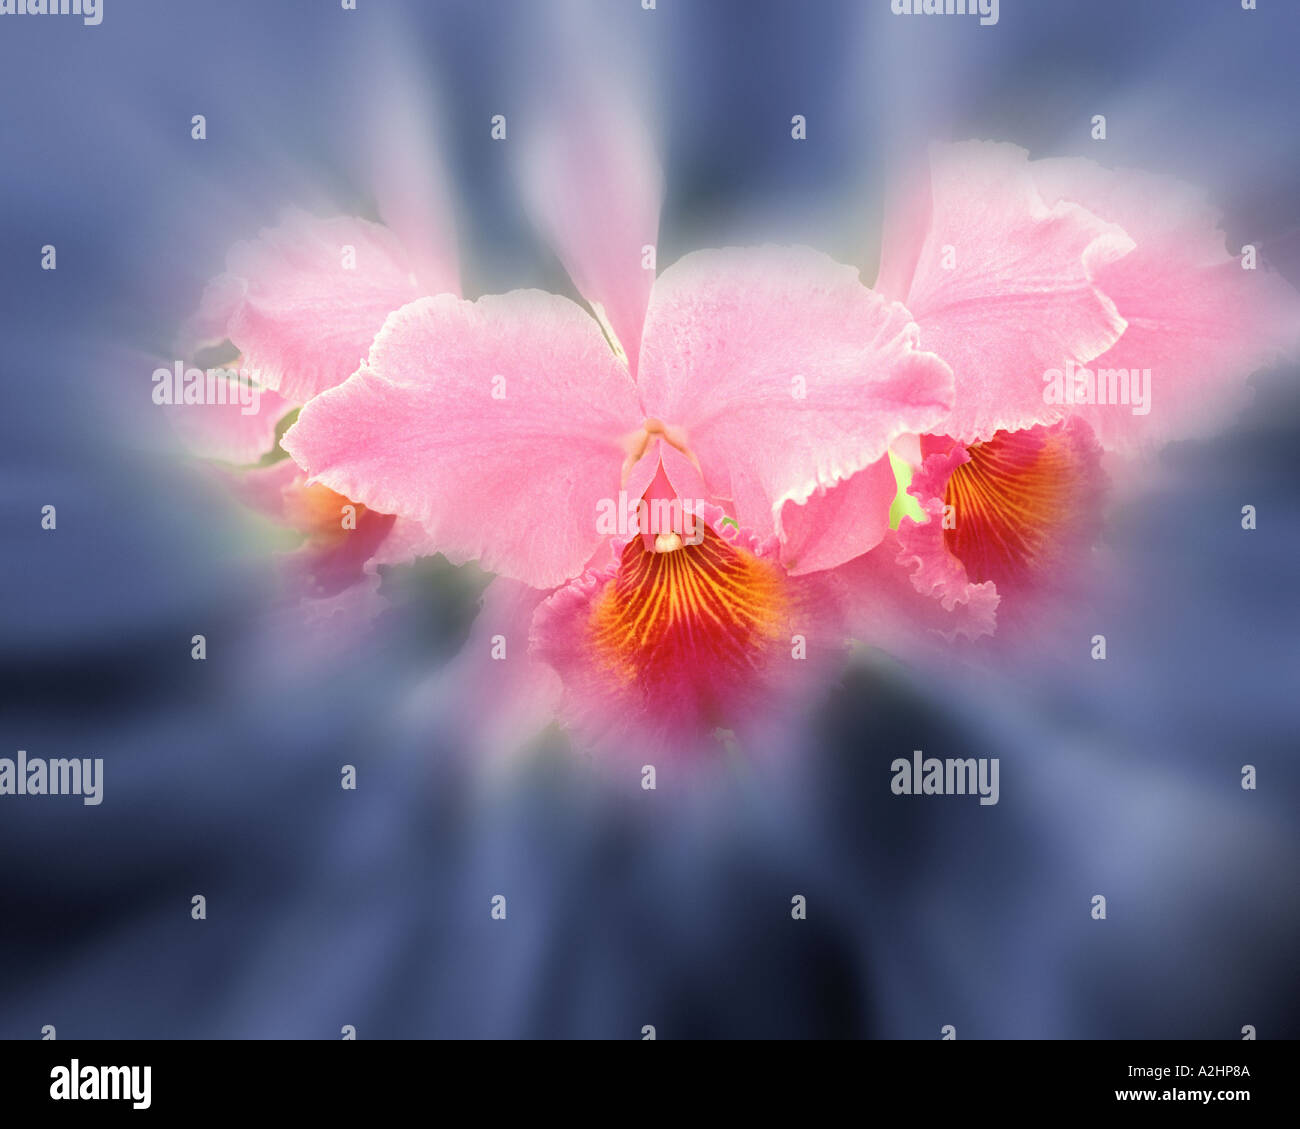 USA - HAWAII: Cattleya Orchid Stock Photo